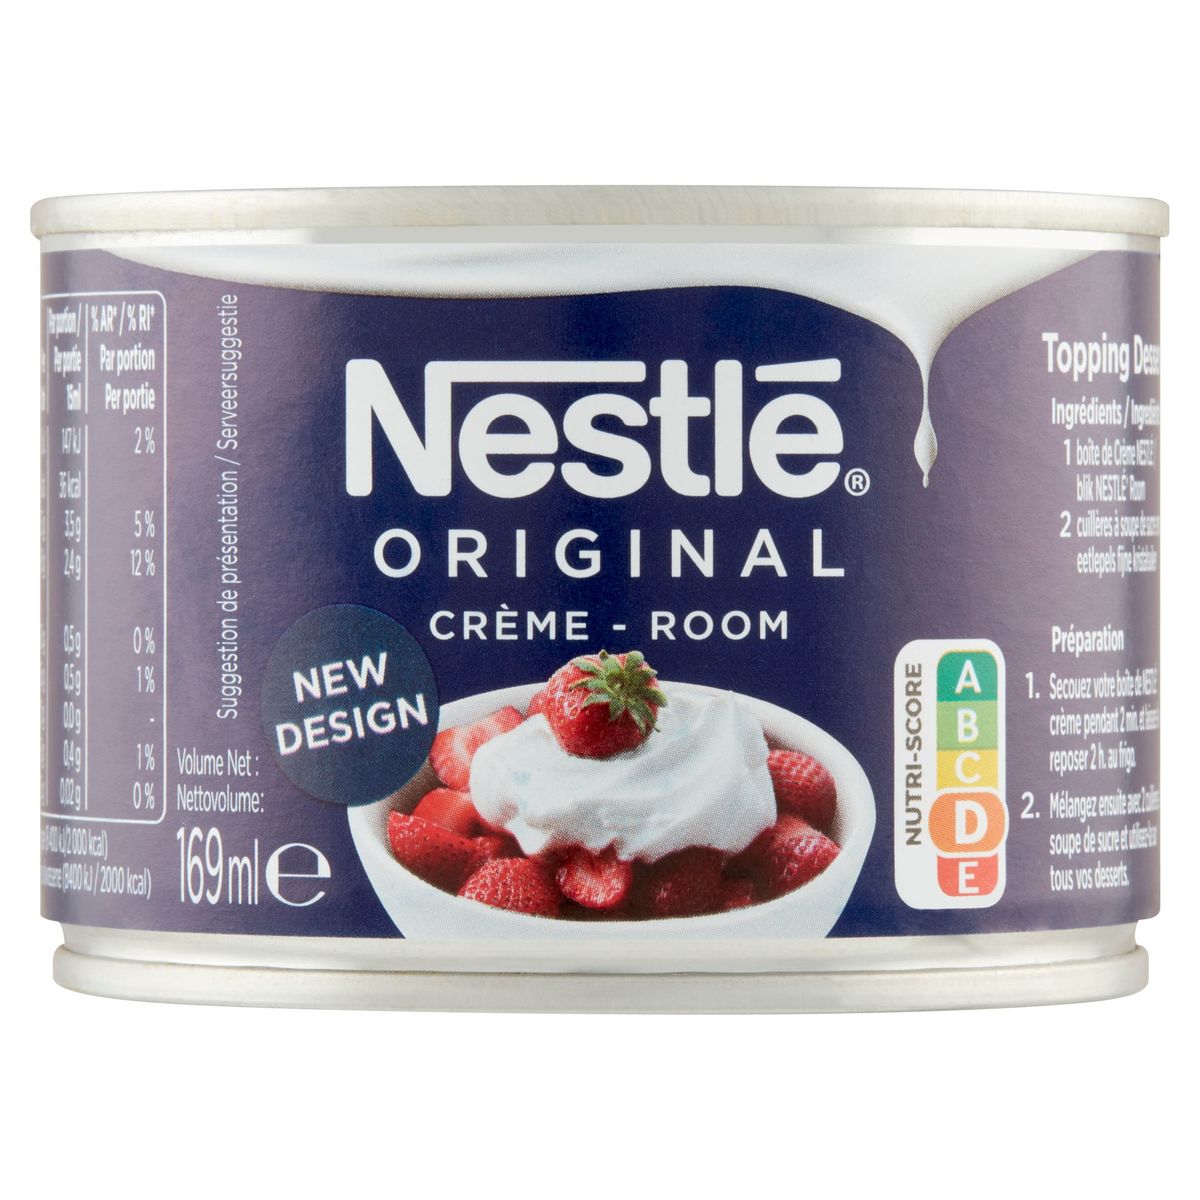 Nestlé Original Crème 169 ml